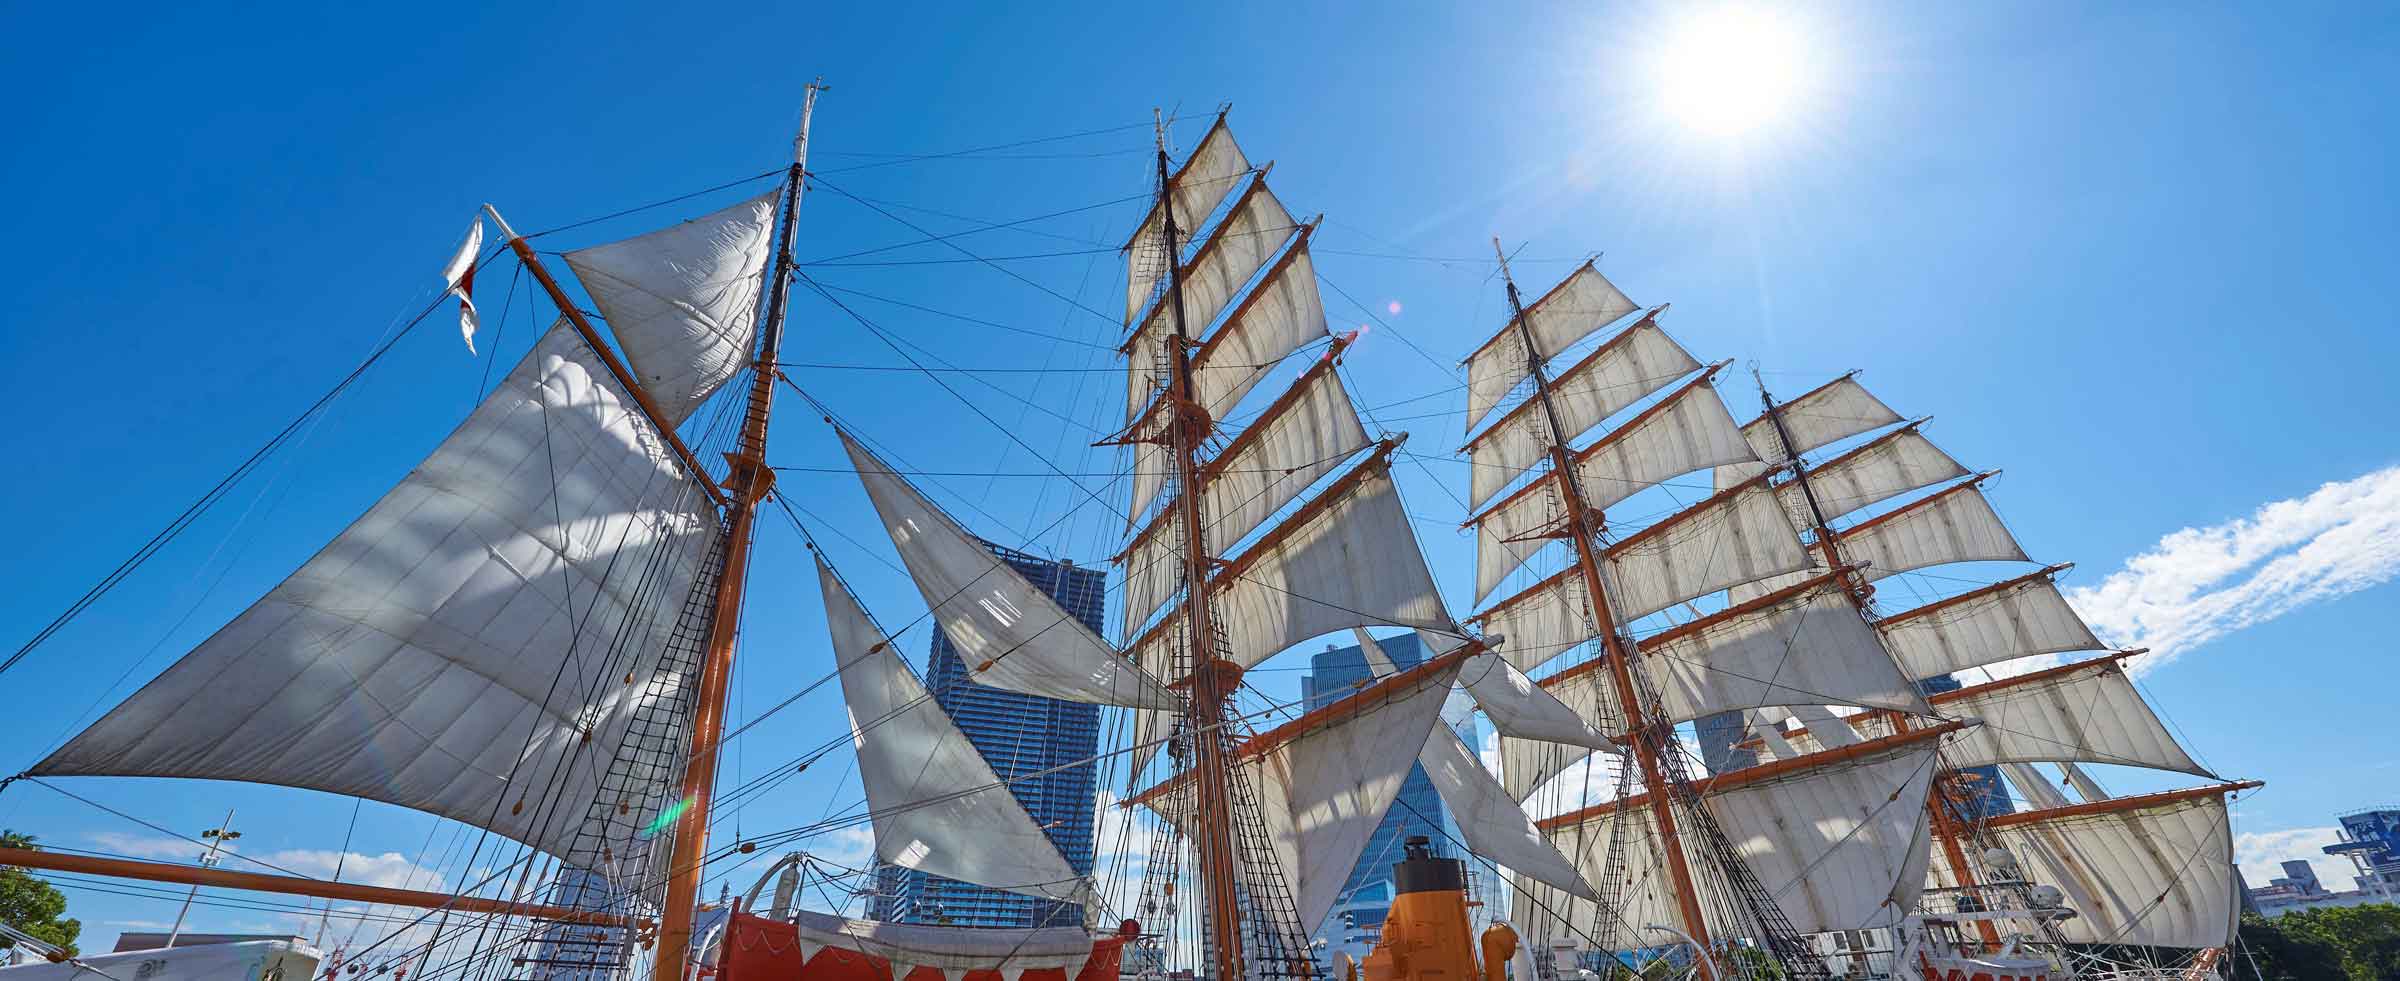 帆船日本丸 | 帆船日本丸・横浜みなと博物館